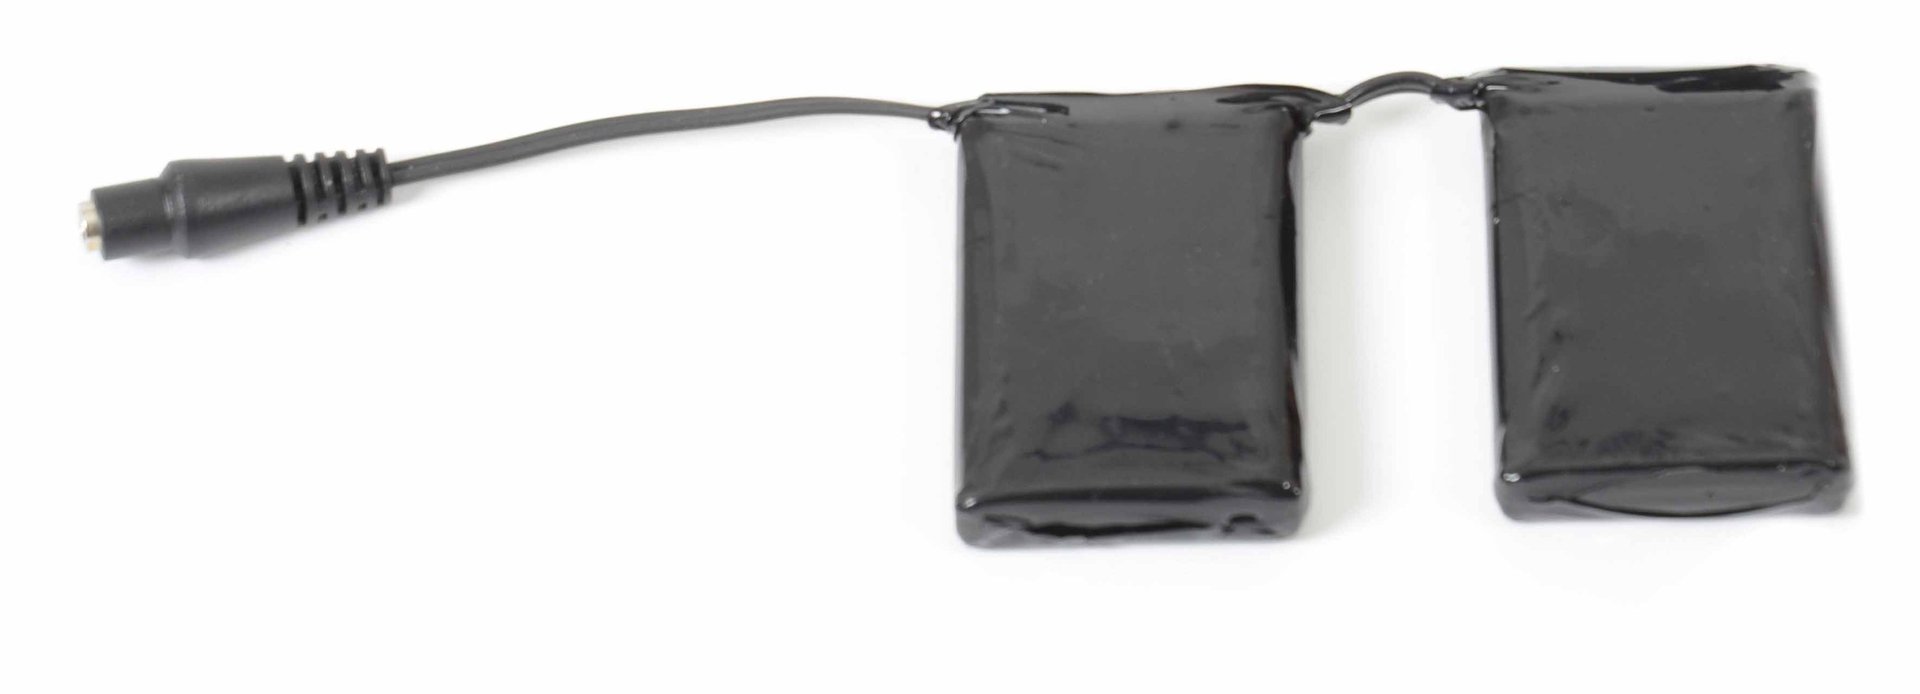 Klan-e Remplacement batterie 7,4 v (3,0 Ah) Noir unique taille